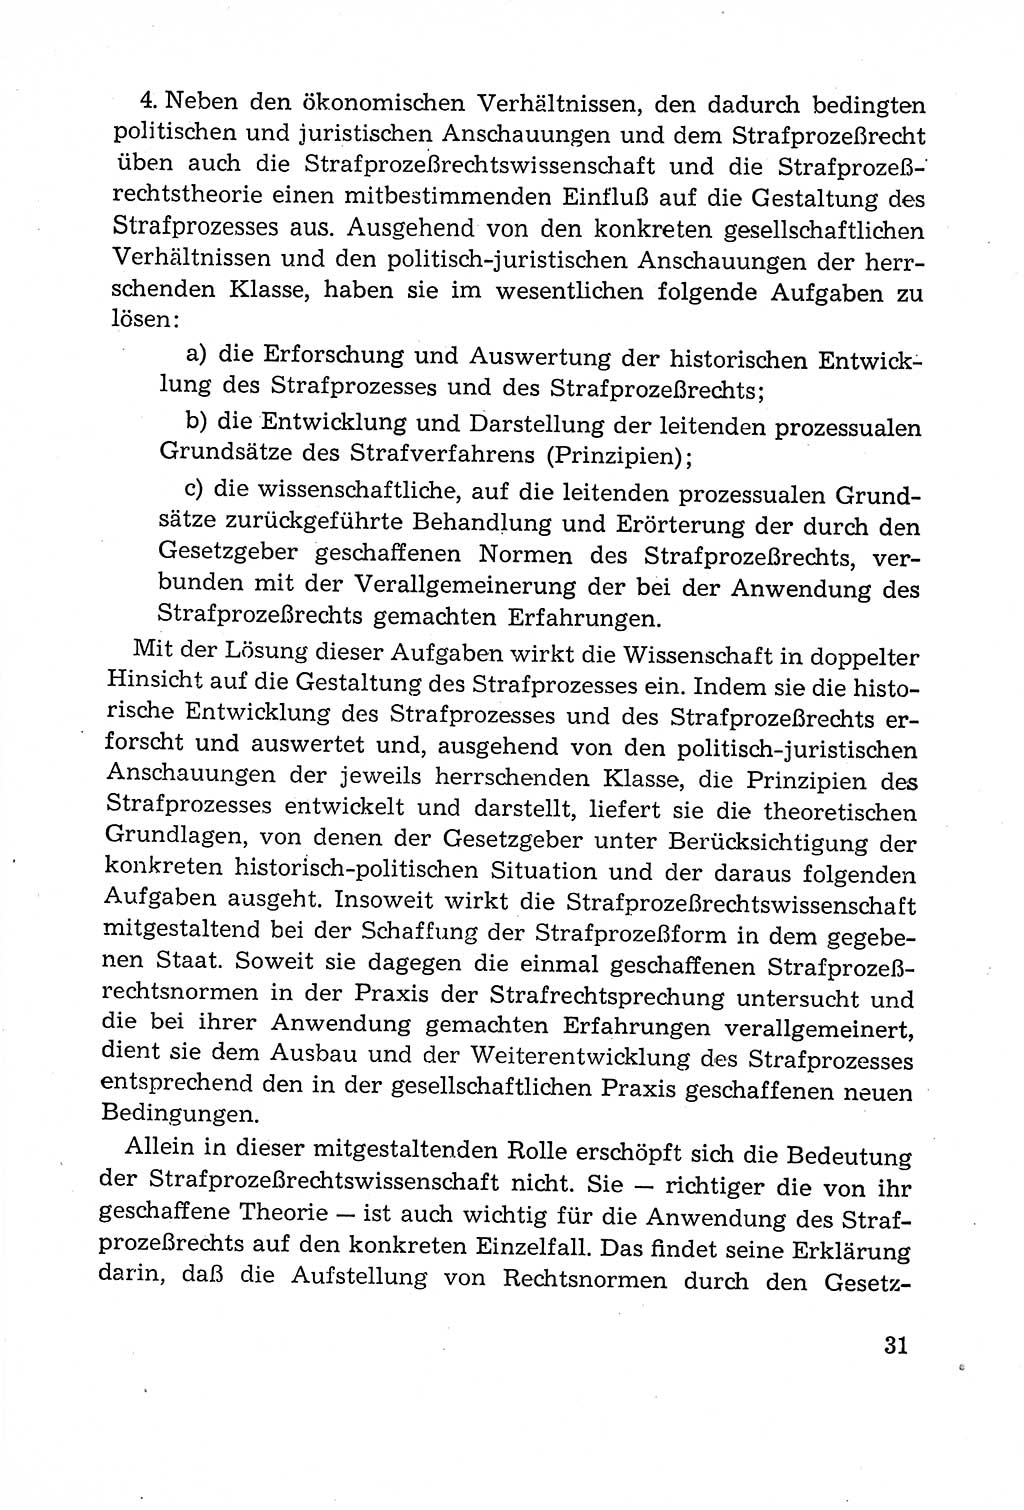 Leitfaden des Strafprozeßrechts der Deutschen Demokratischen Republik (DDR) 1959, Seite 31 (LF StPR DDR 1959, S. 31)